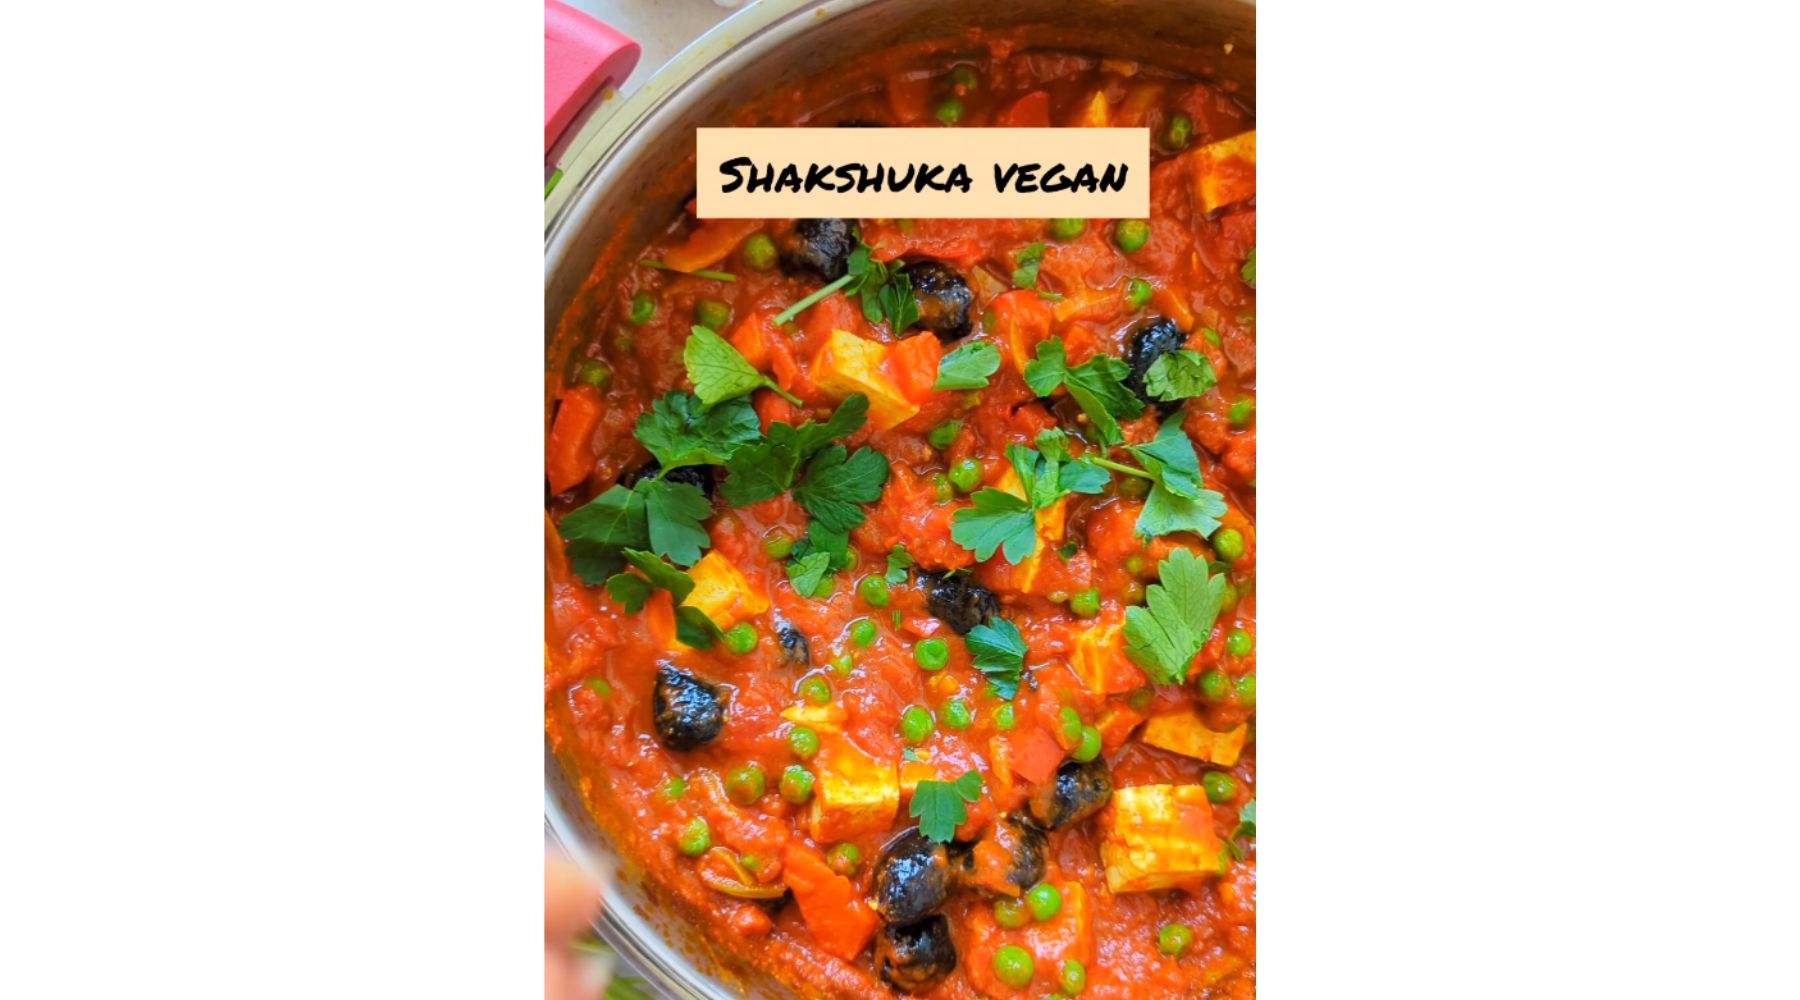 Shakshuka Vegan